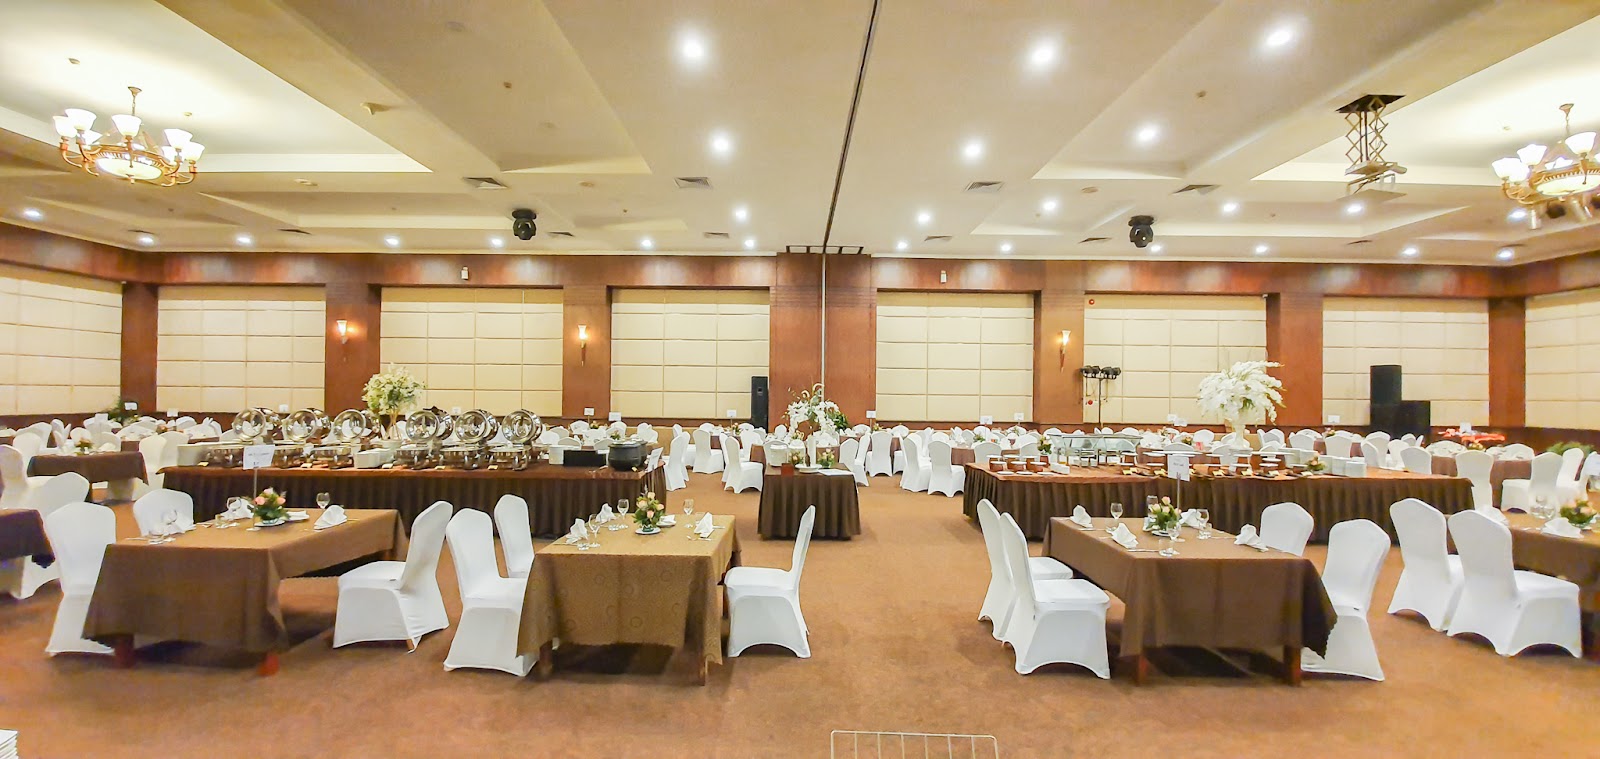 Chớp deal hời ưu đãi đến 60% tại nhà hàng, khách sạn của Saigontourist - 16